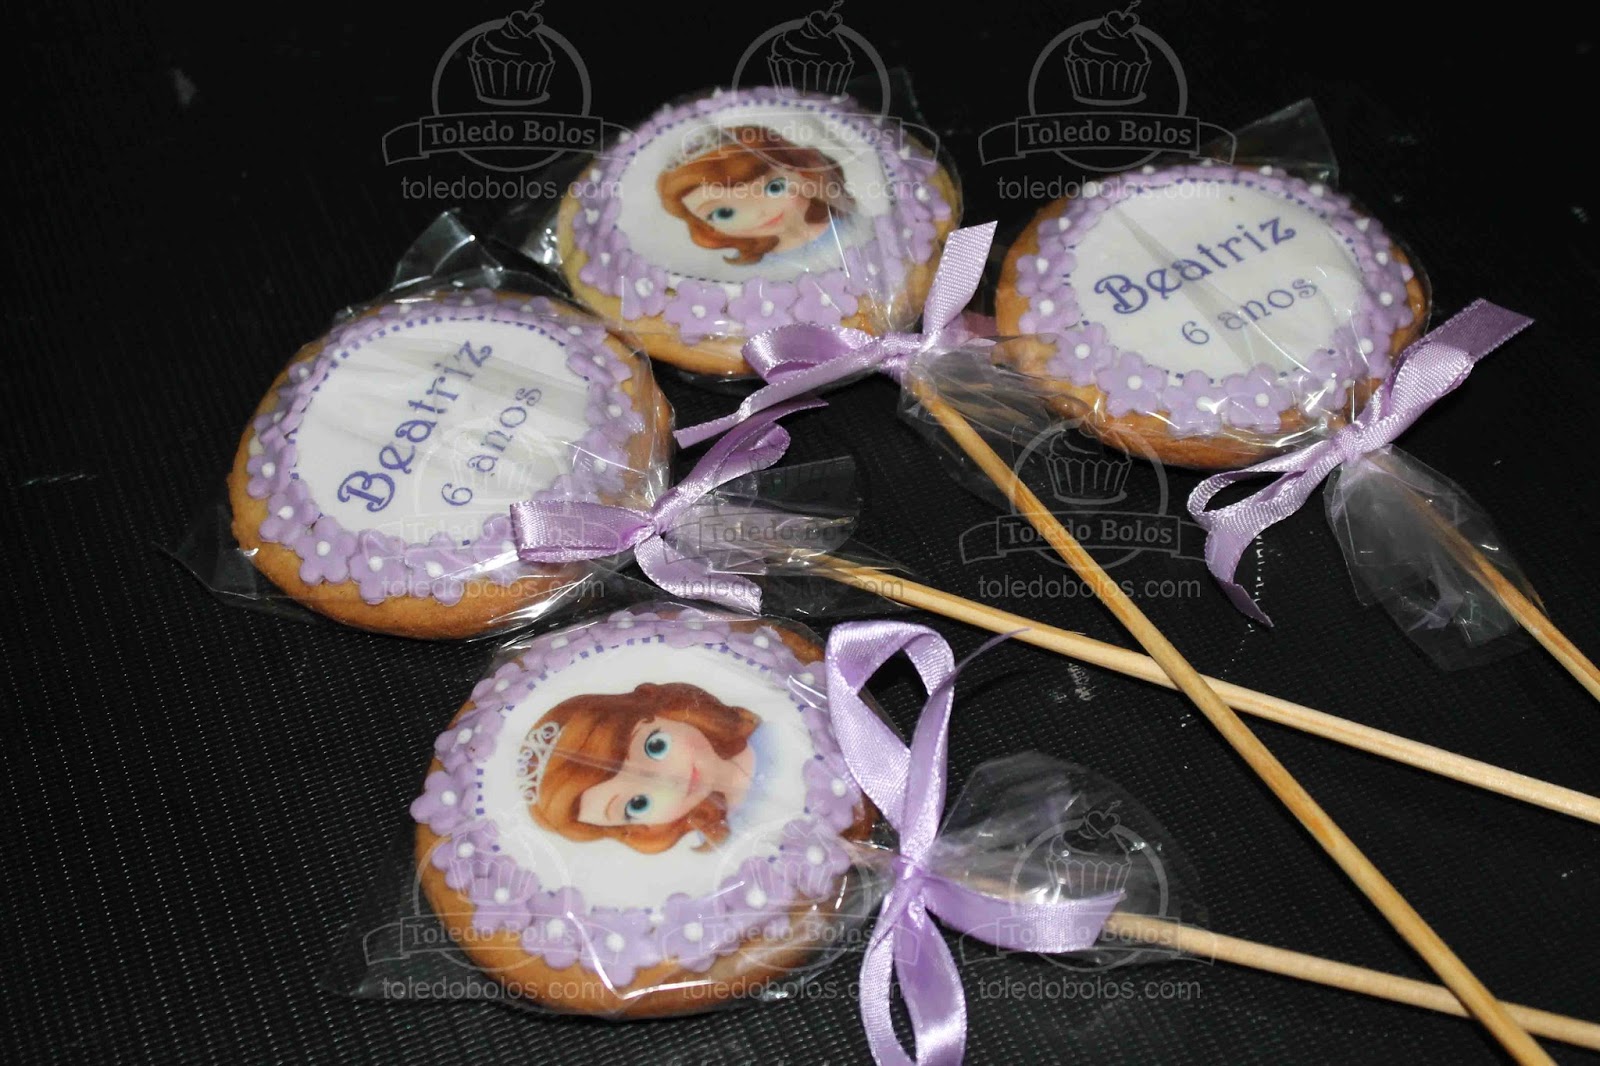 Toledo Bolos - Bolos decorados, Cupcakes e Doces personalizados para sua  festa no Rio de Janeiro: Bolo Princesa Sofia